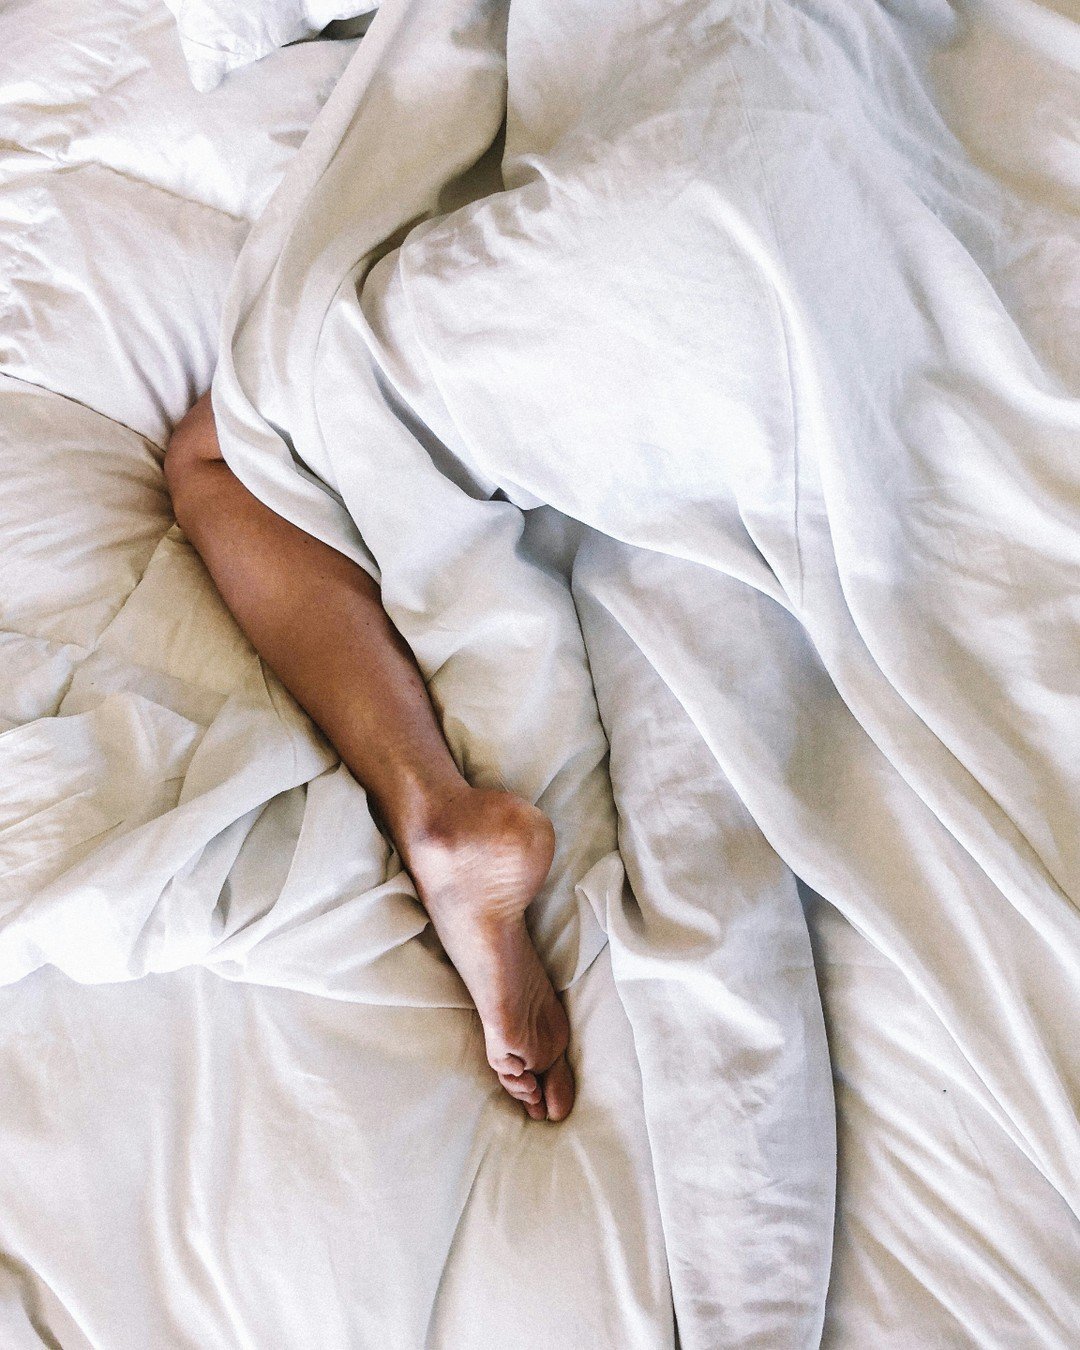 La importancia de dormir bien es fundamental para tener energía y rendir al máximo. En nuestros apartamentos te ofrecemos cómodas camas donde podrás descansar como en una nube. Eso sí, ¡levantarse de la cama puede ser todo un reto! 😅 Feliz fin de semana ev